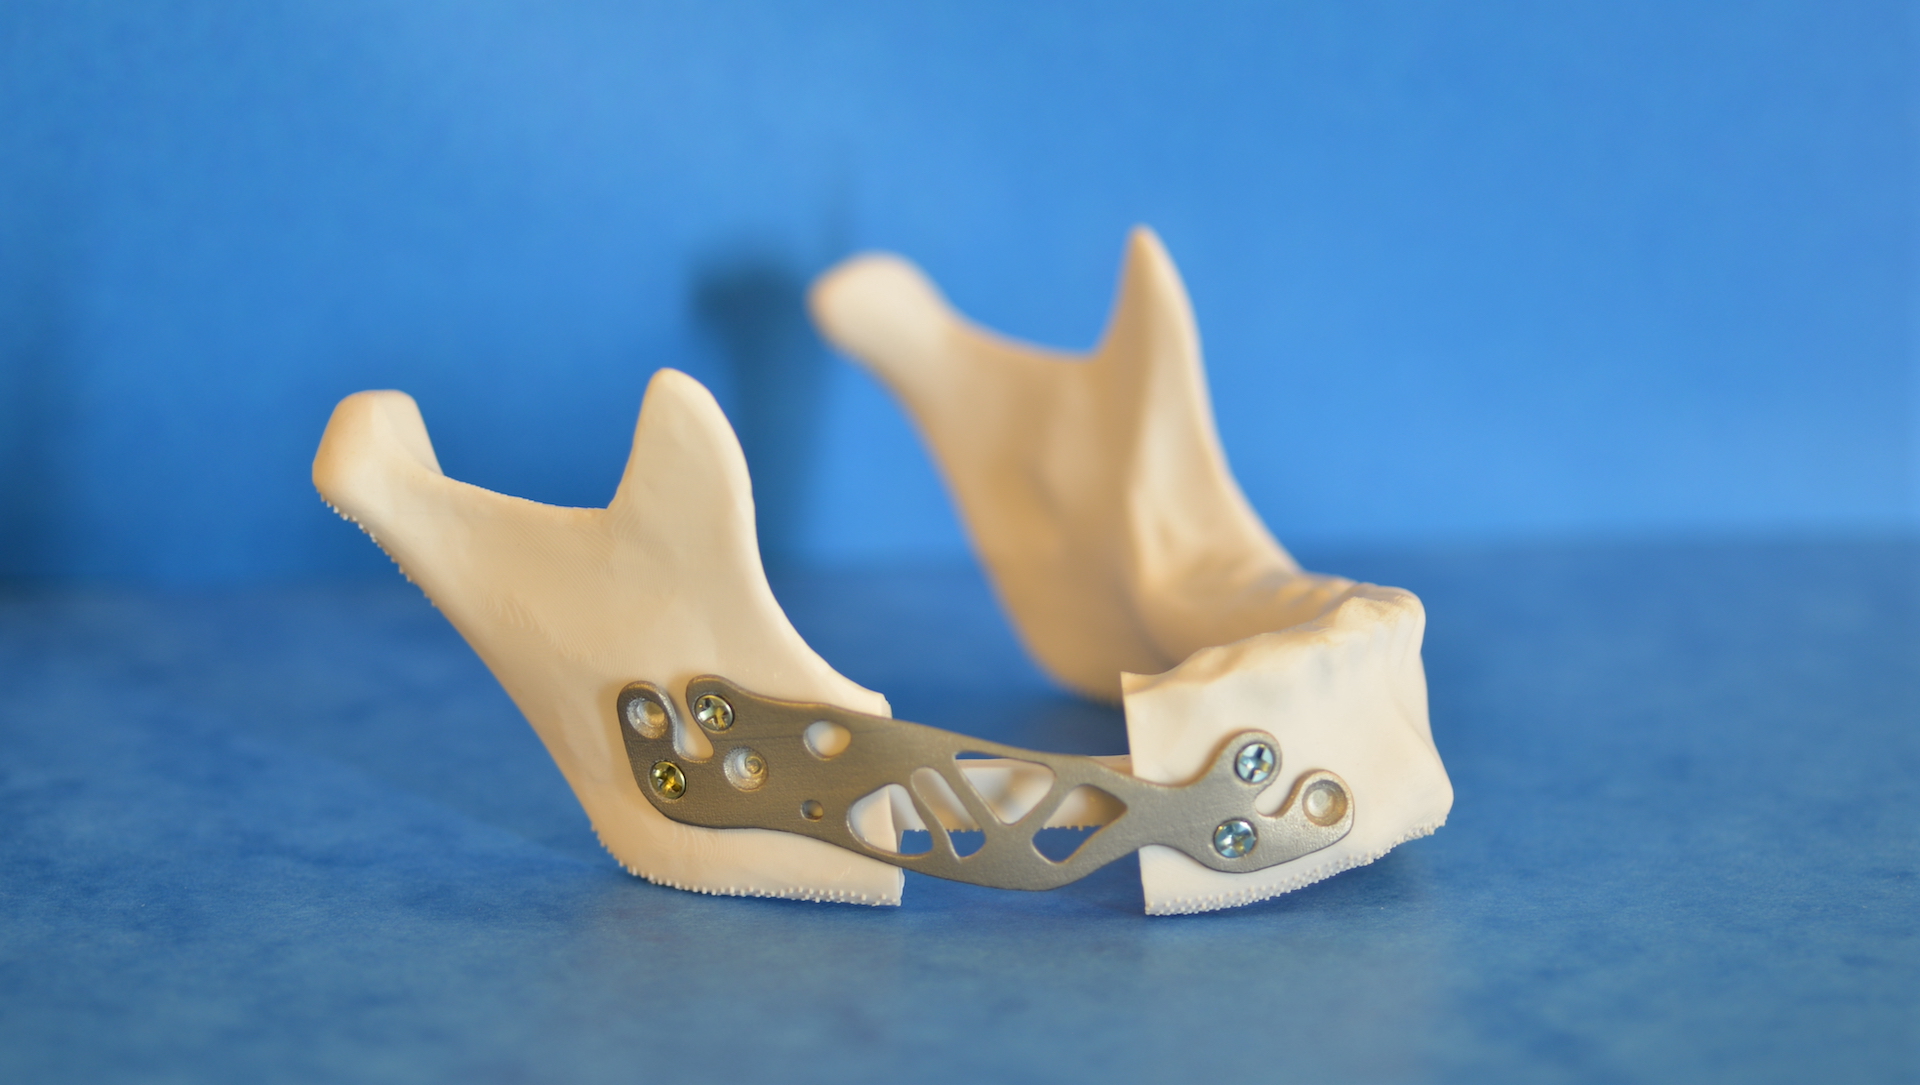 Glad 3D - Impression 3D de dispositifs médicaux